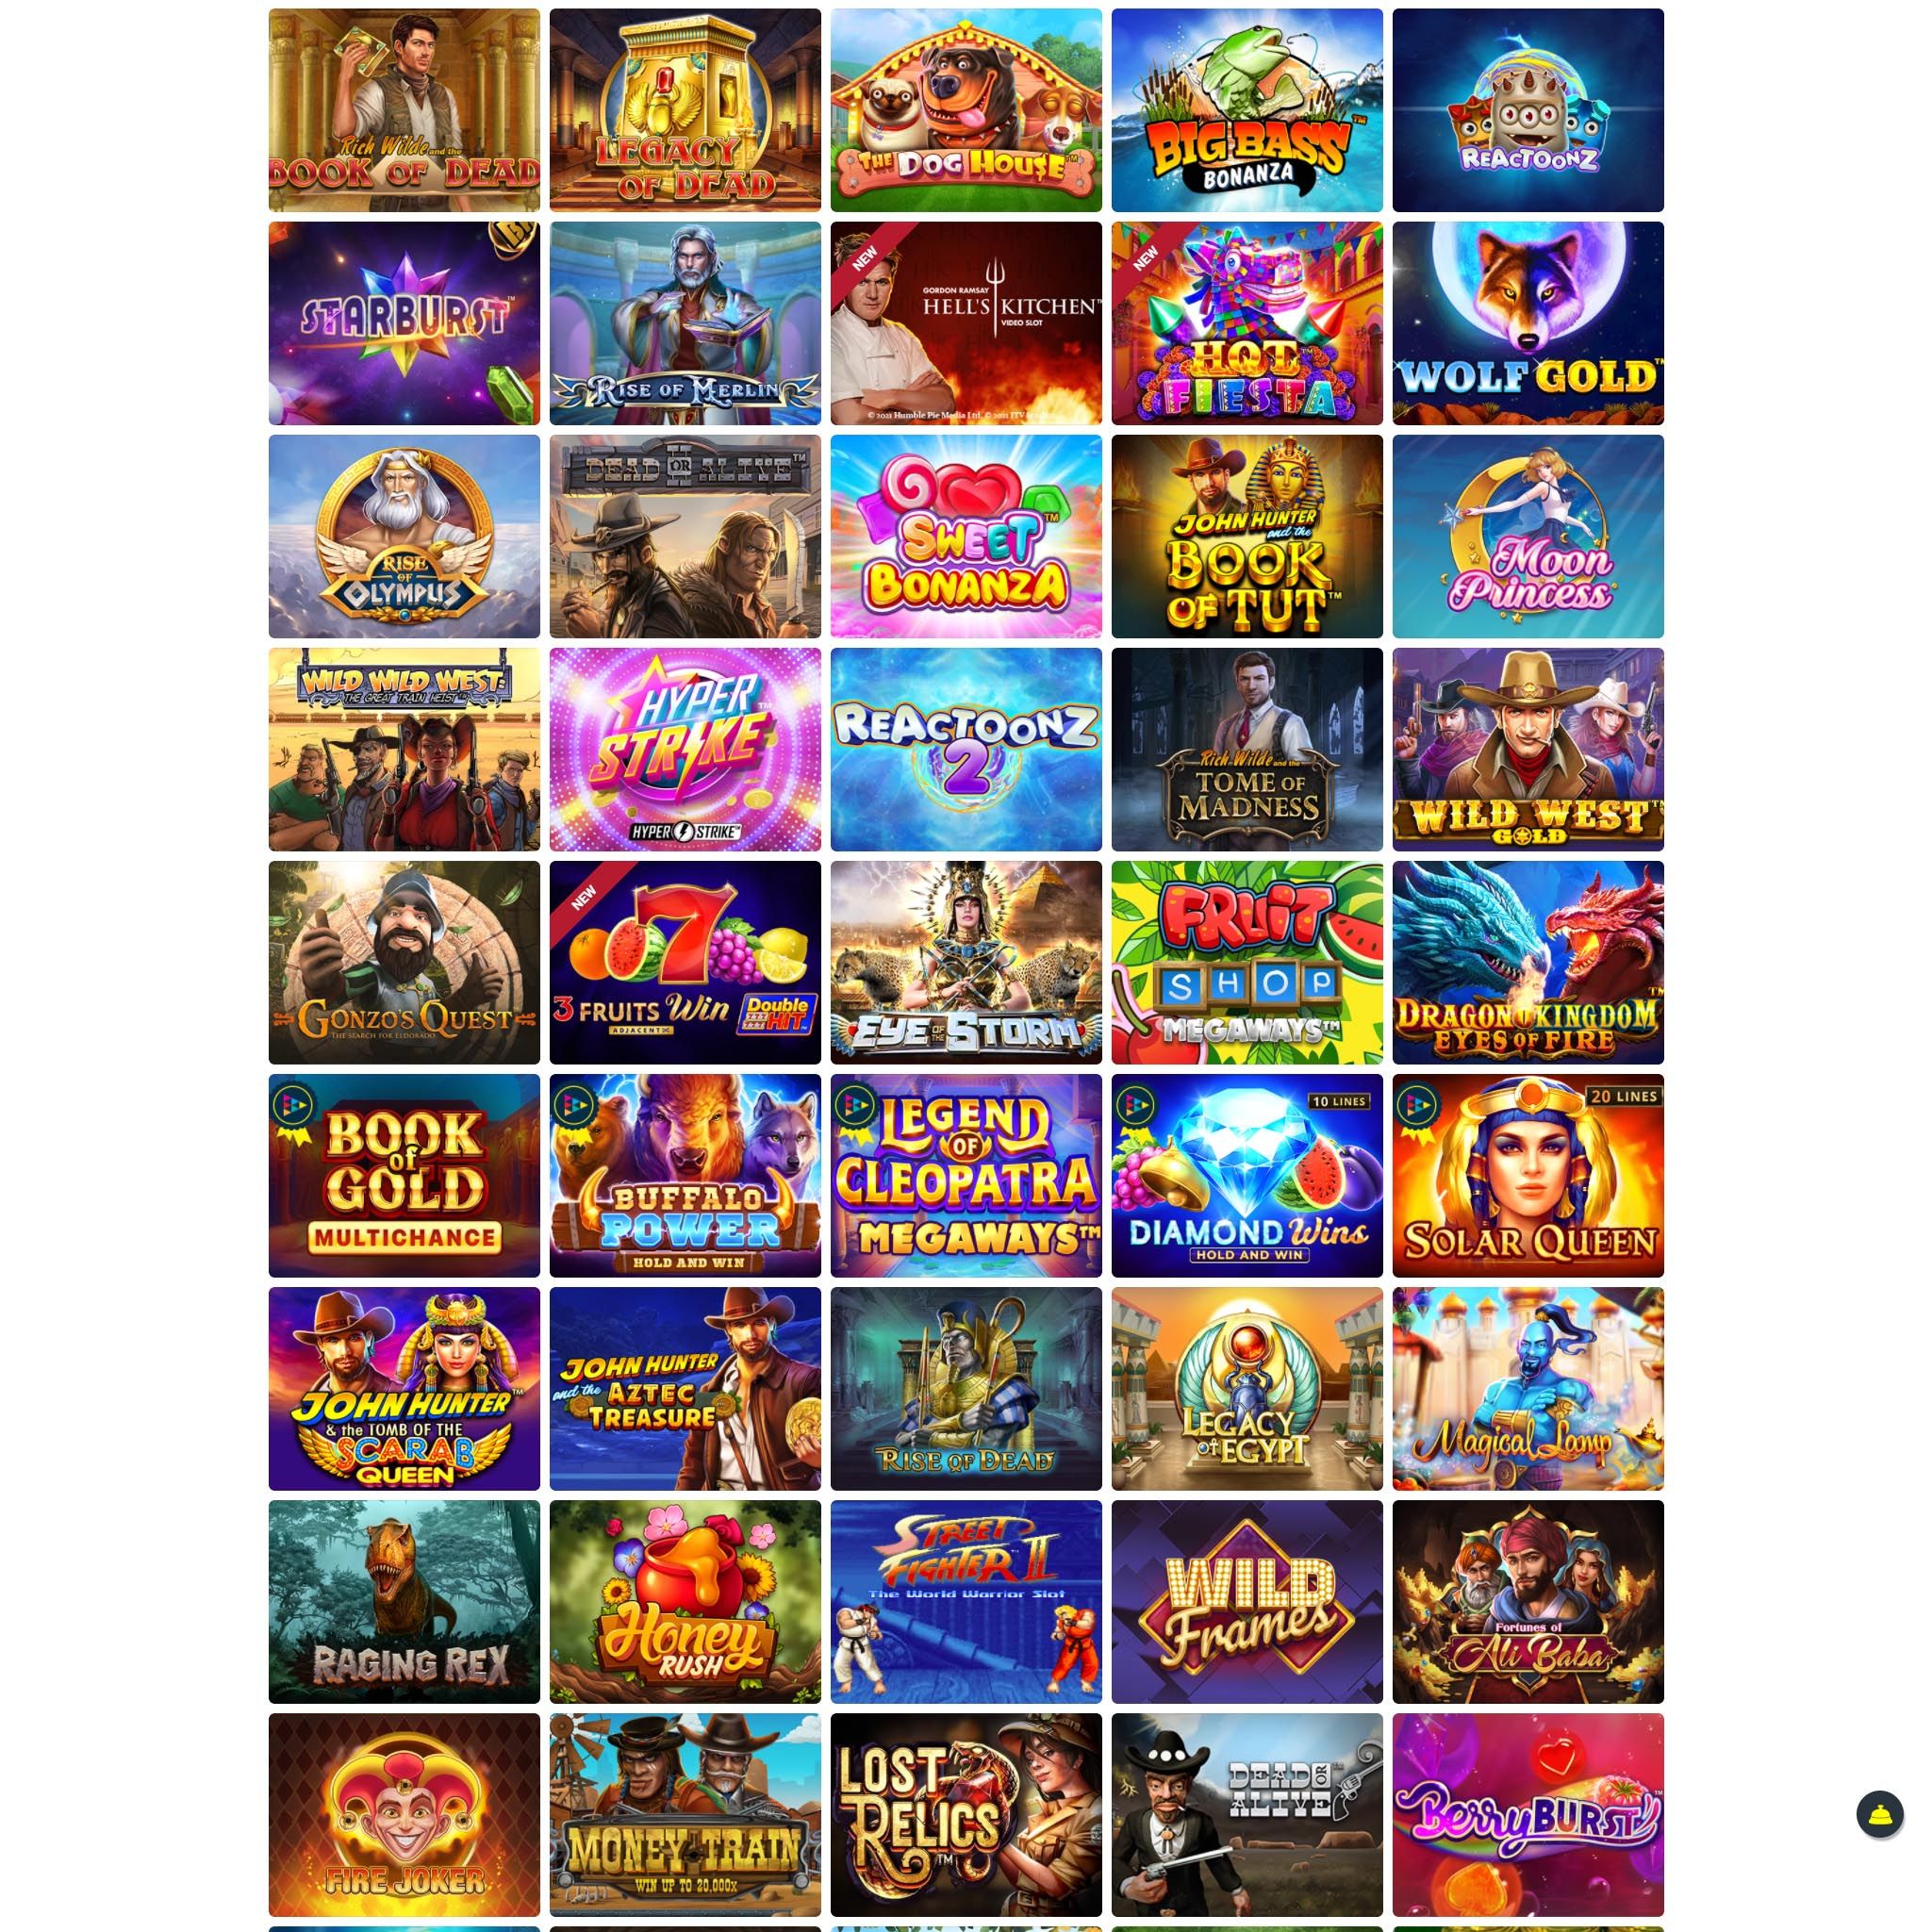 Pelaa netticasino Sven-Play voittaaksesi oikeaa rahaa – oikean rahan online casino! Vertaa kaikki nettikasinot ja löydä parhaat casinot Suomessa.